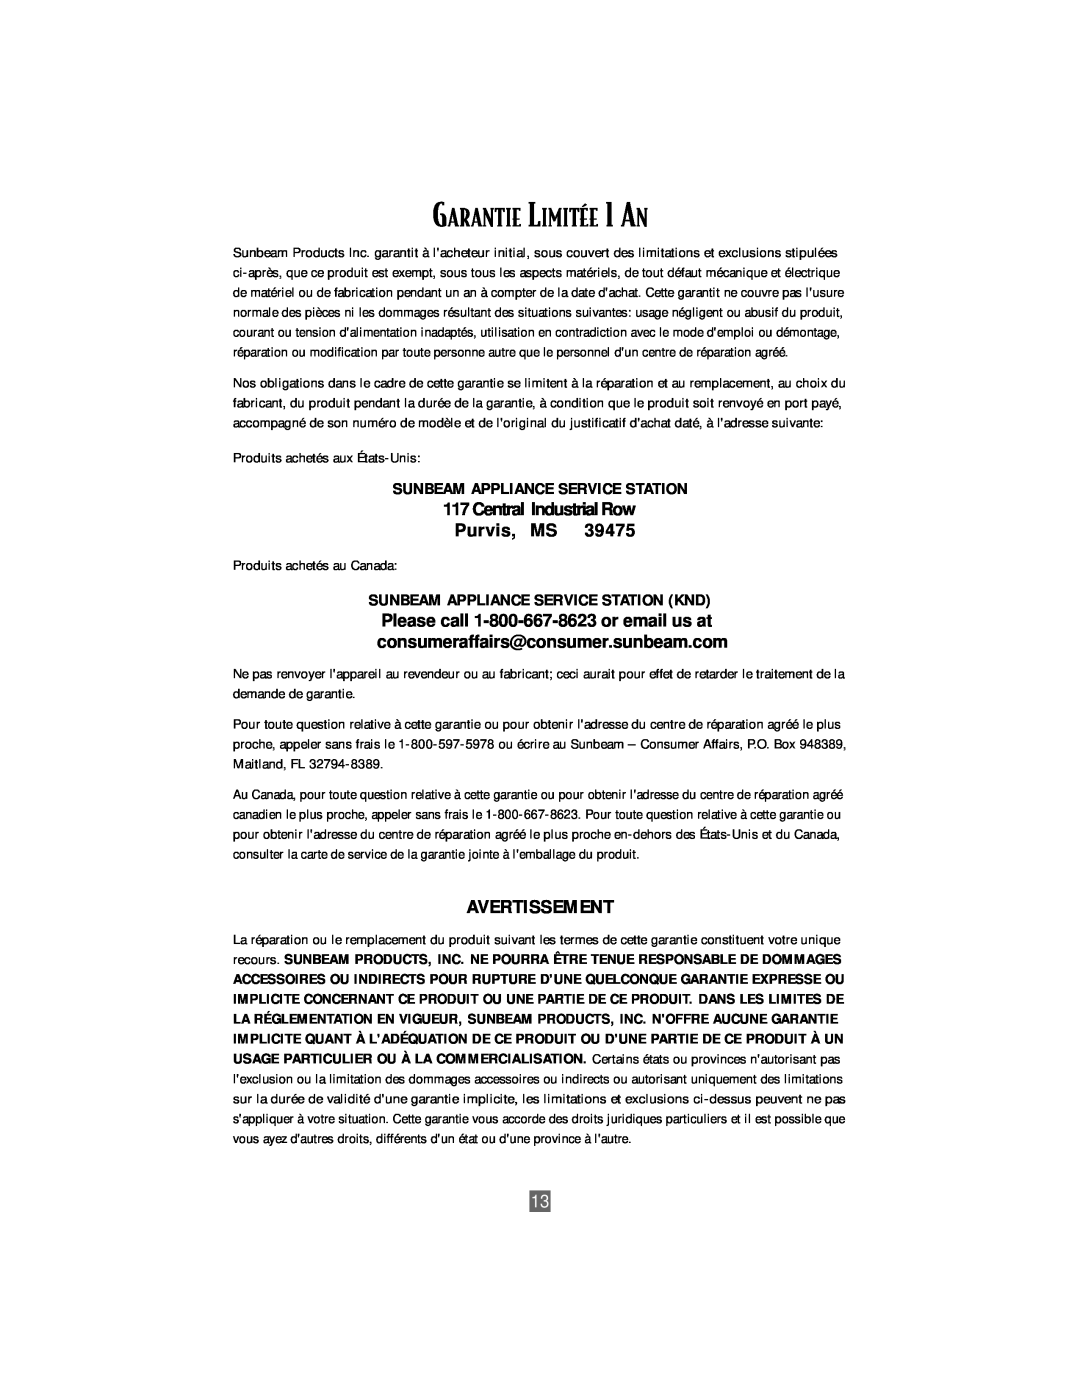 Oster 3207 instruction manual GARANTIE LIMITƒE 1 AN, Avertissement, Central Industrial Row Purvis, MS 